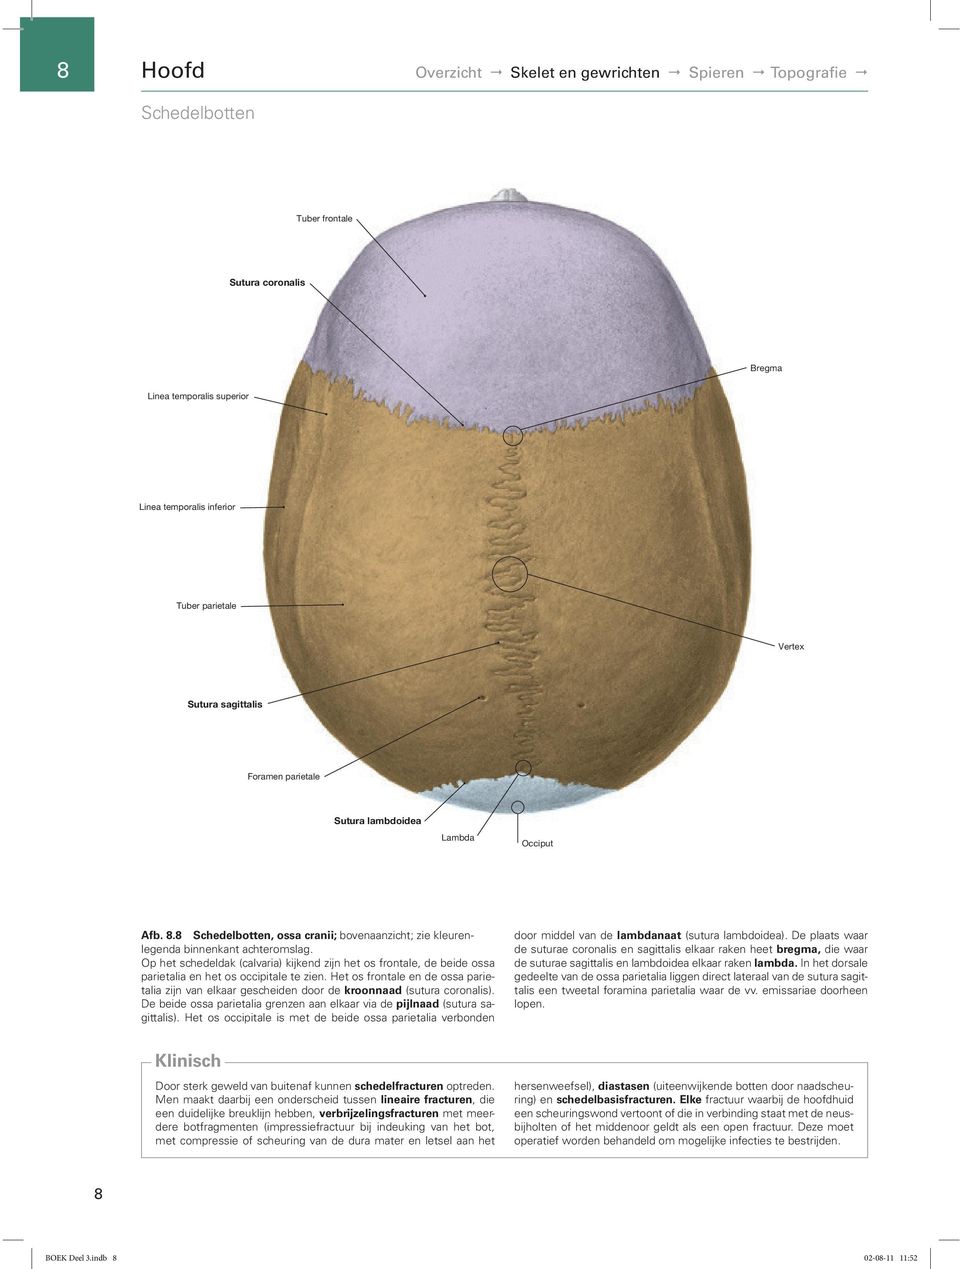 Op het schedeldak (calvaria) kijkend zijn het os frontale, de beide ossa parietalia en het os occipitale te zien.